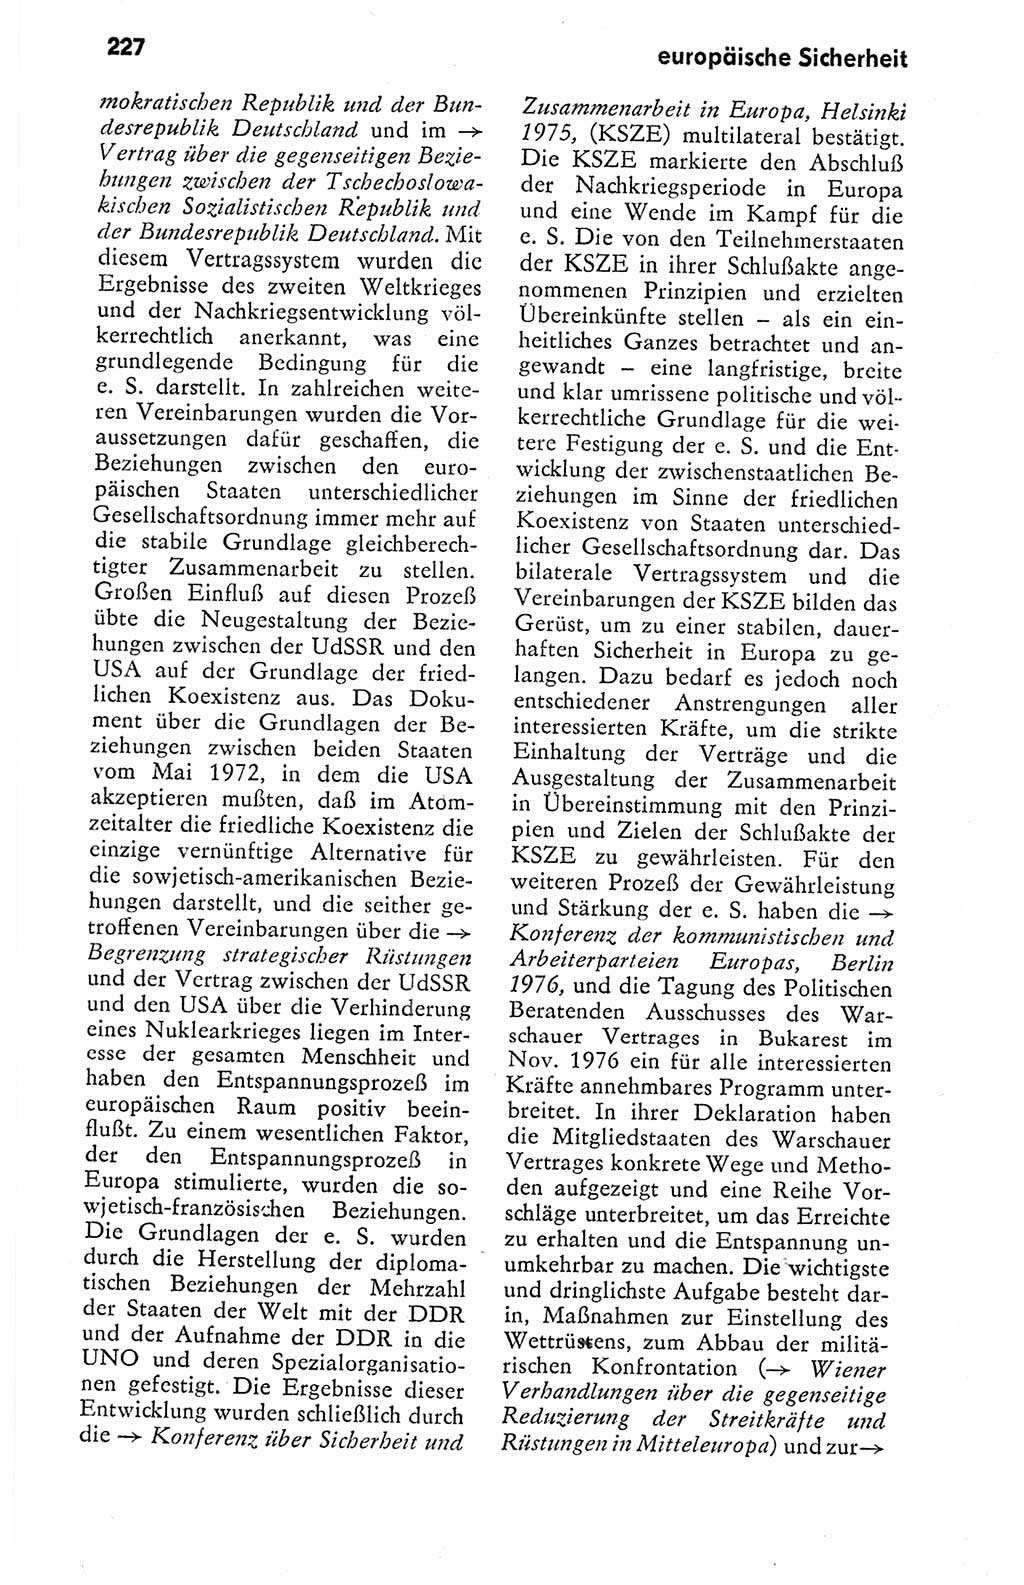 Kleines politisches Wörterbuch [Deutsche Demokratische Republik (DDR)] 1978, Seite 227 (Kl. pol. Wb. DDR 1978, S. 227)